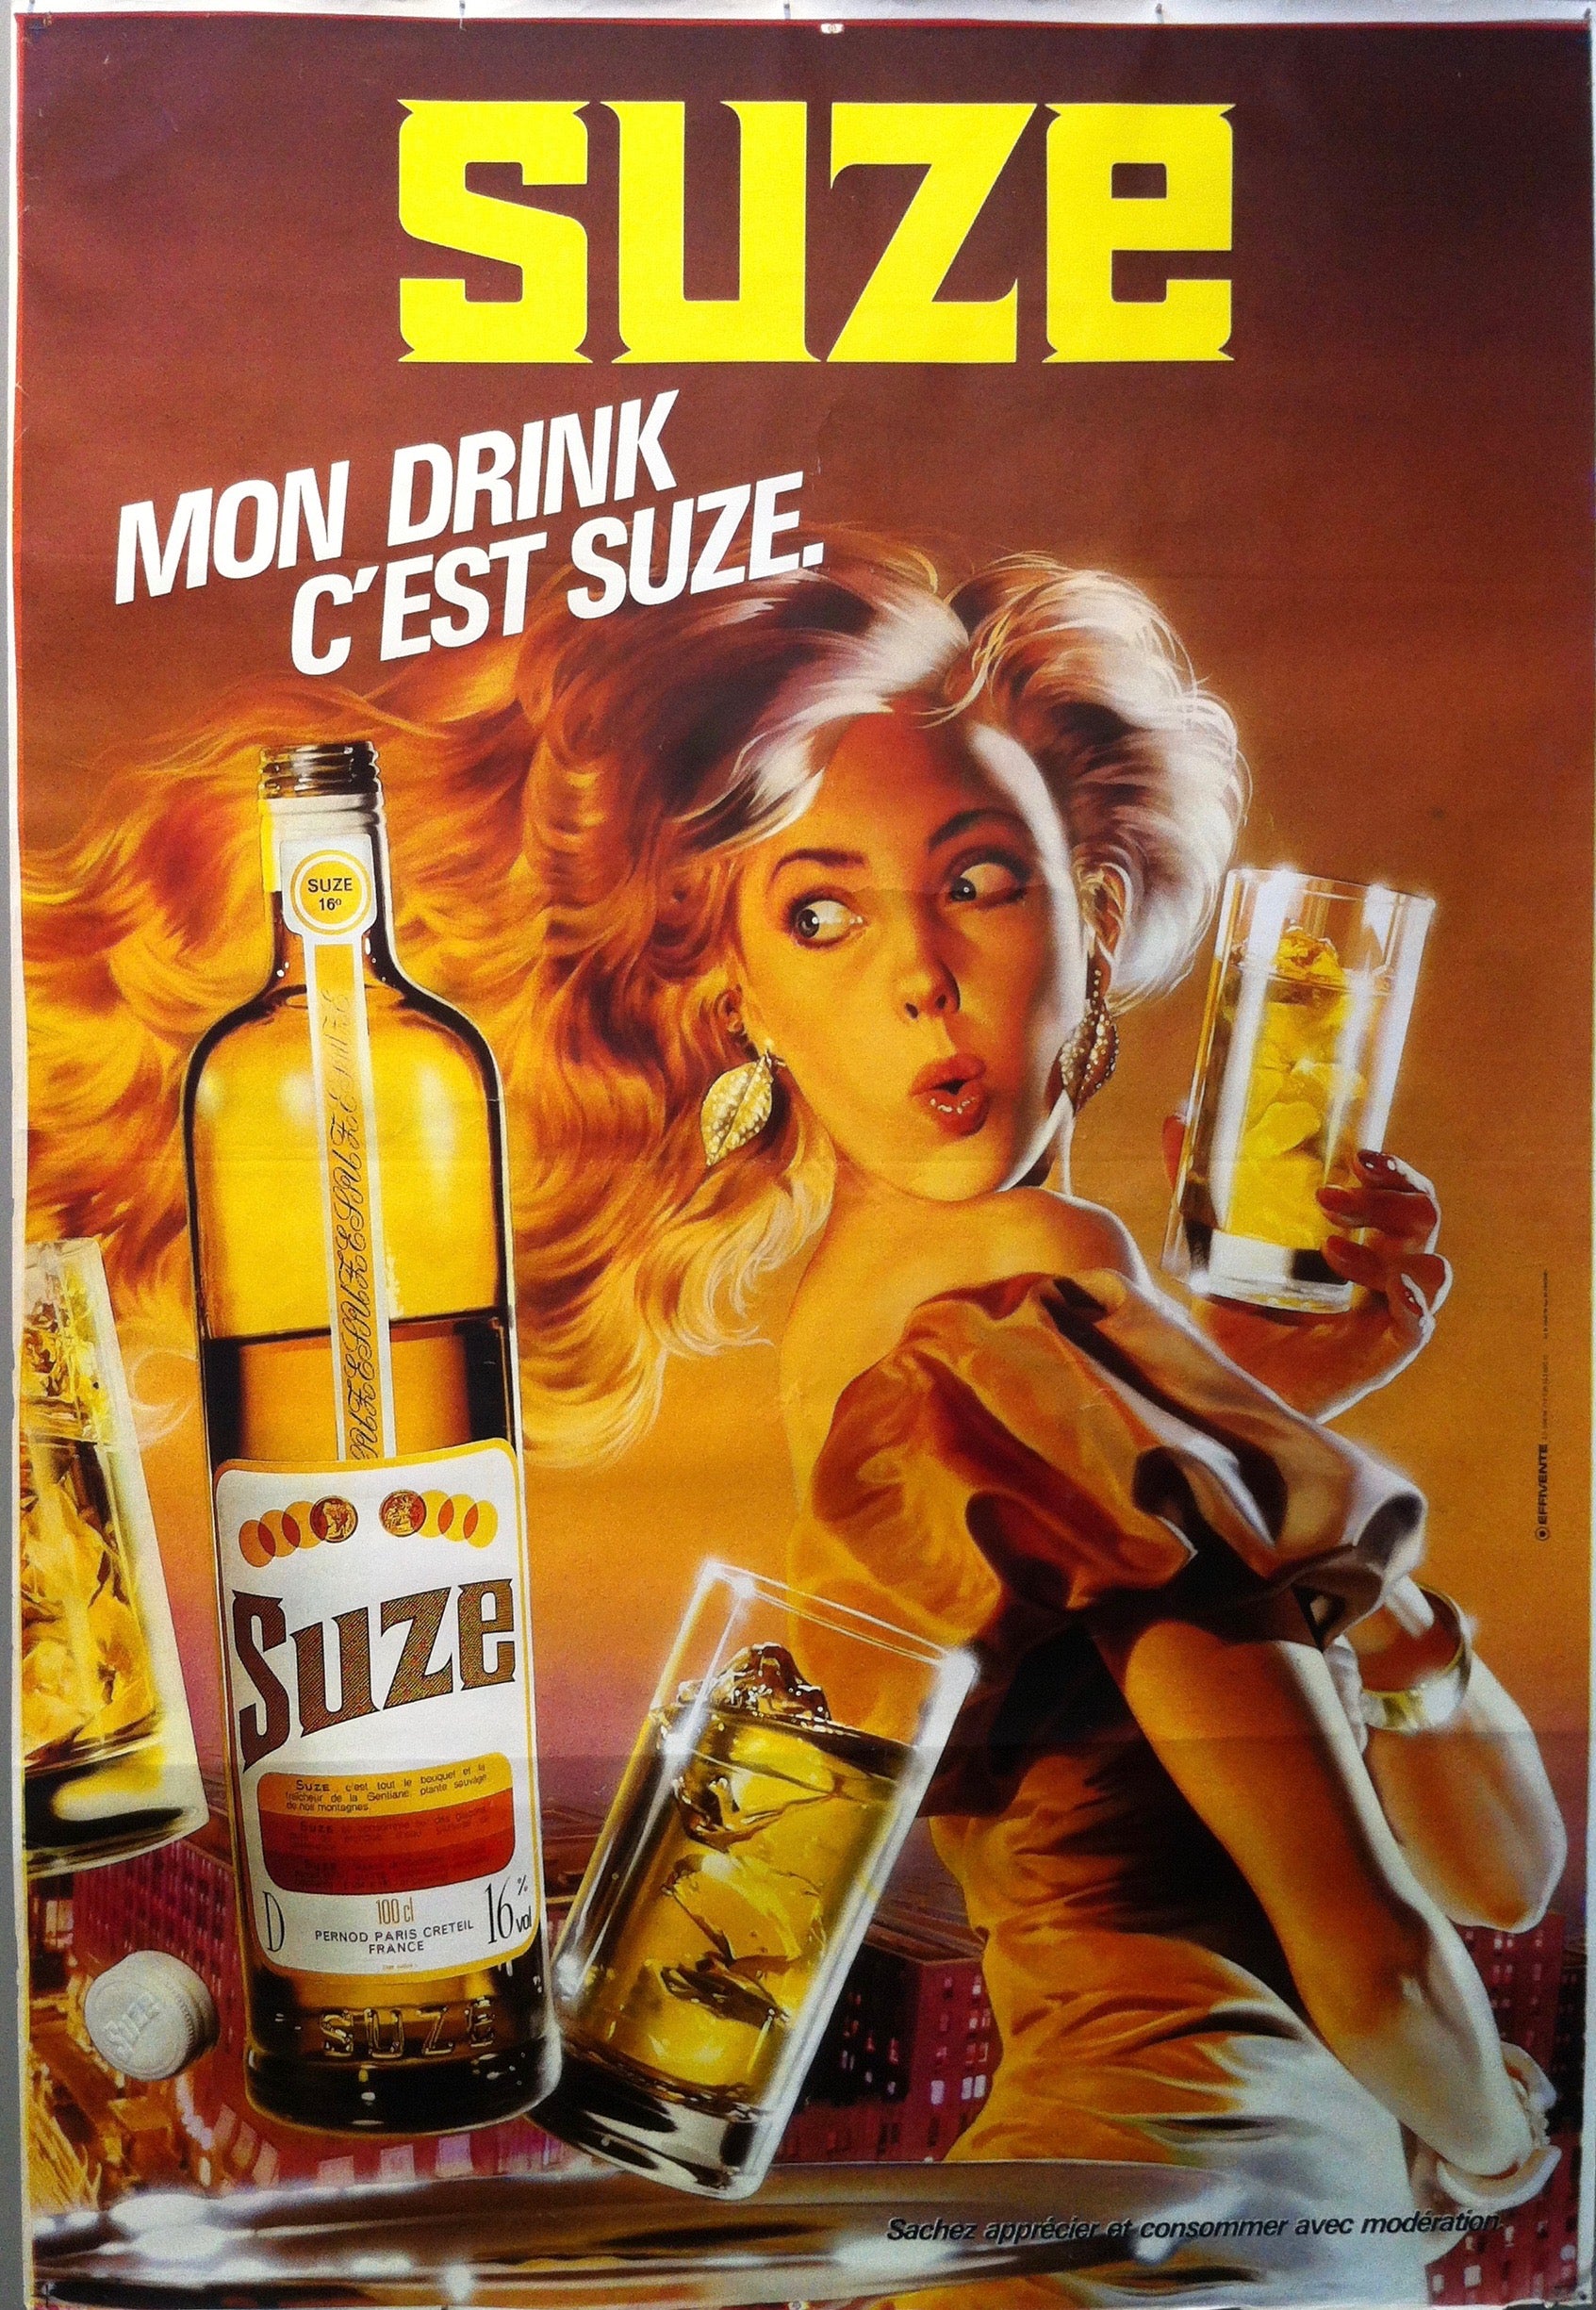 Suze "Mon Drink C'est Suize" (Lady)